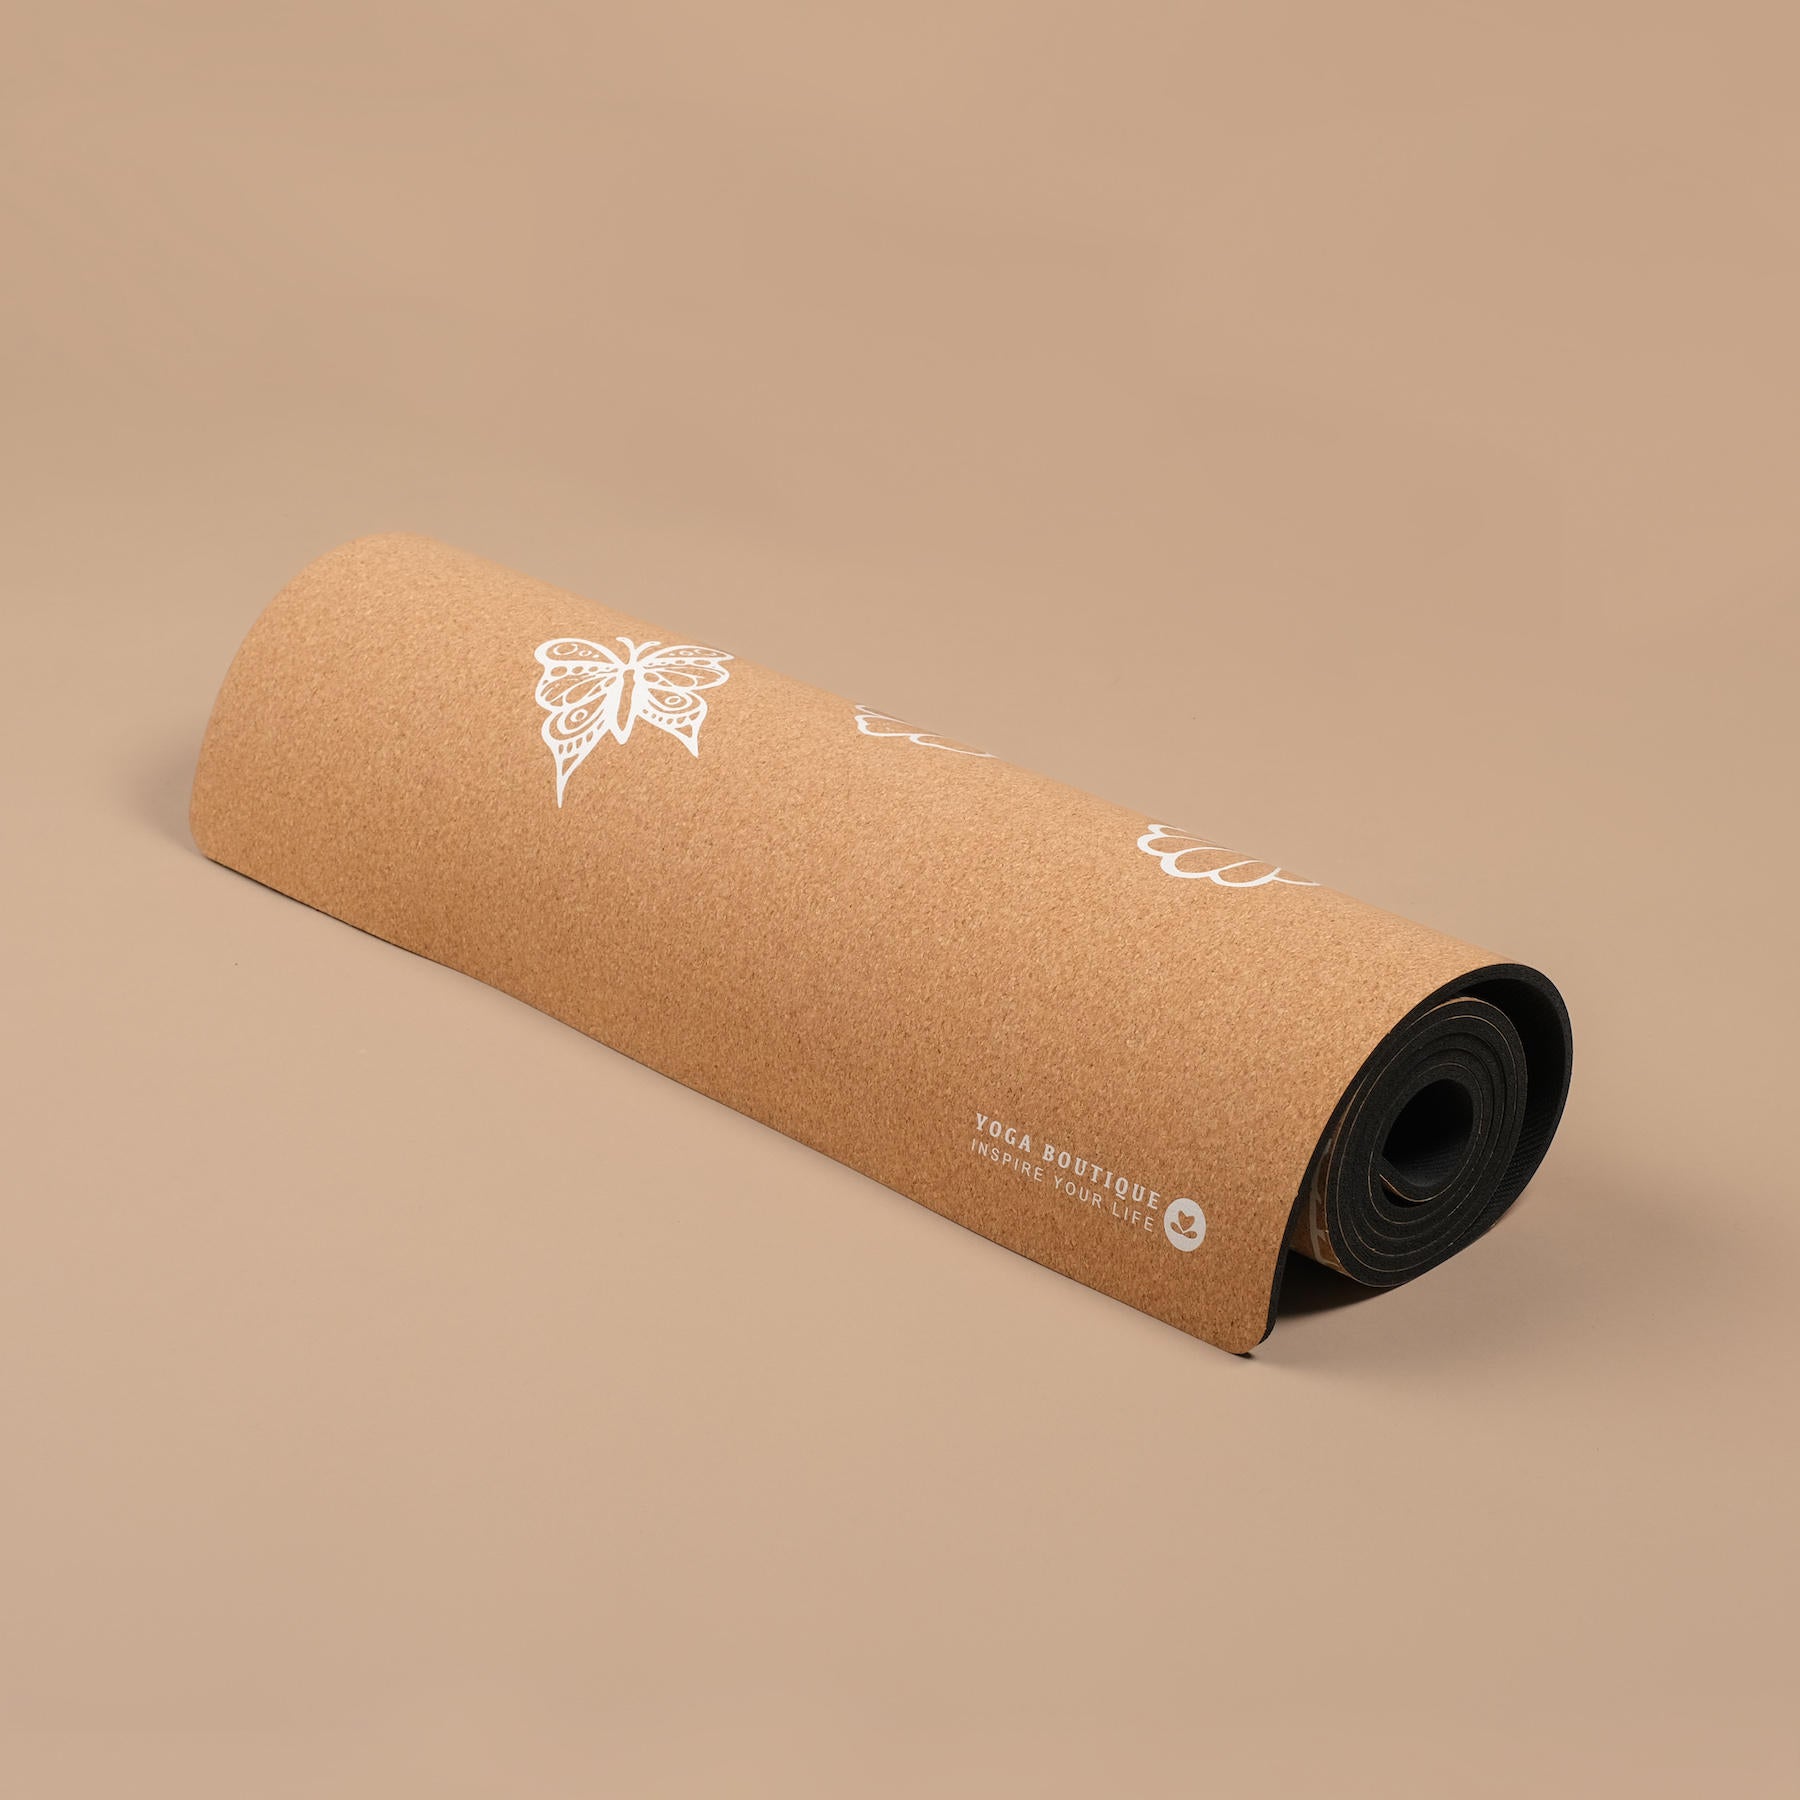 Tapis de yoga en liège Tropical blanc sans PVC, biodégradable